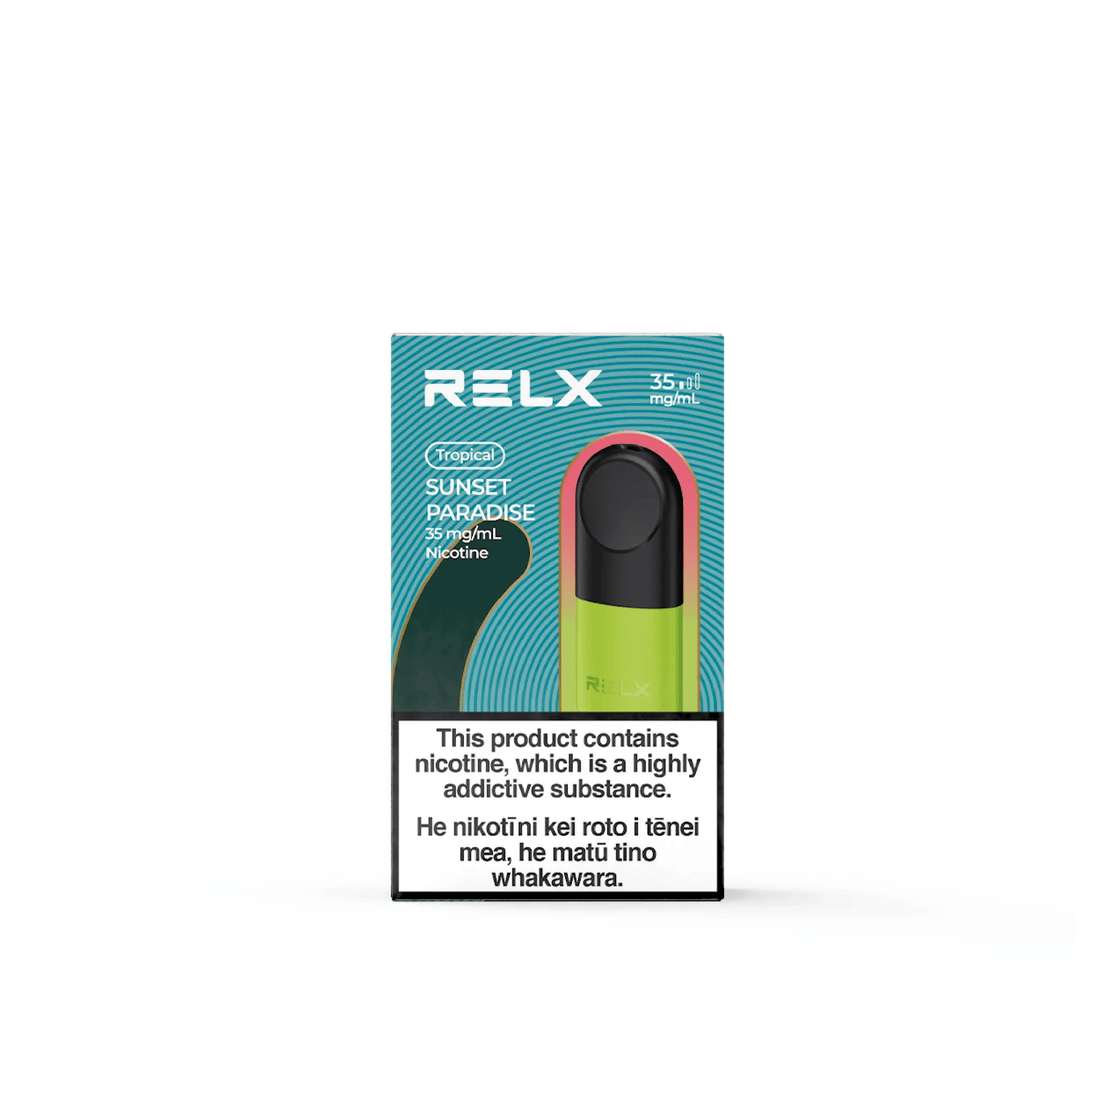 RELX Pod Pro - Sunset Paradise